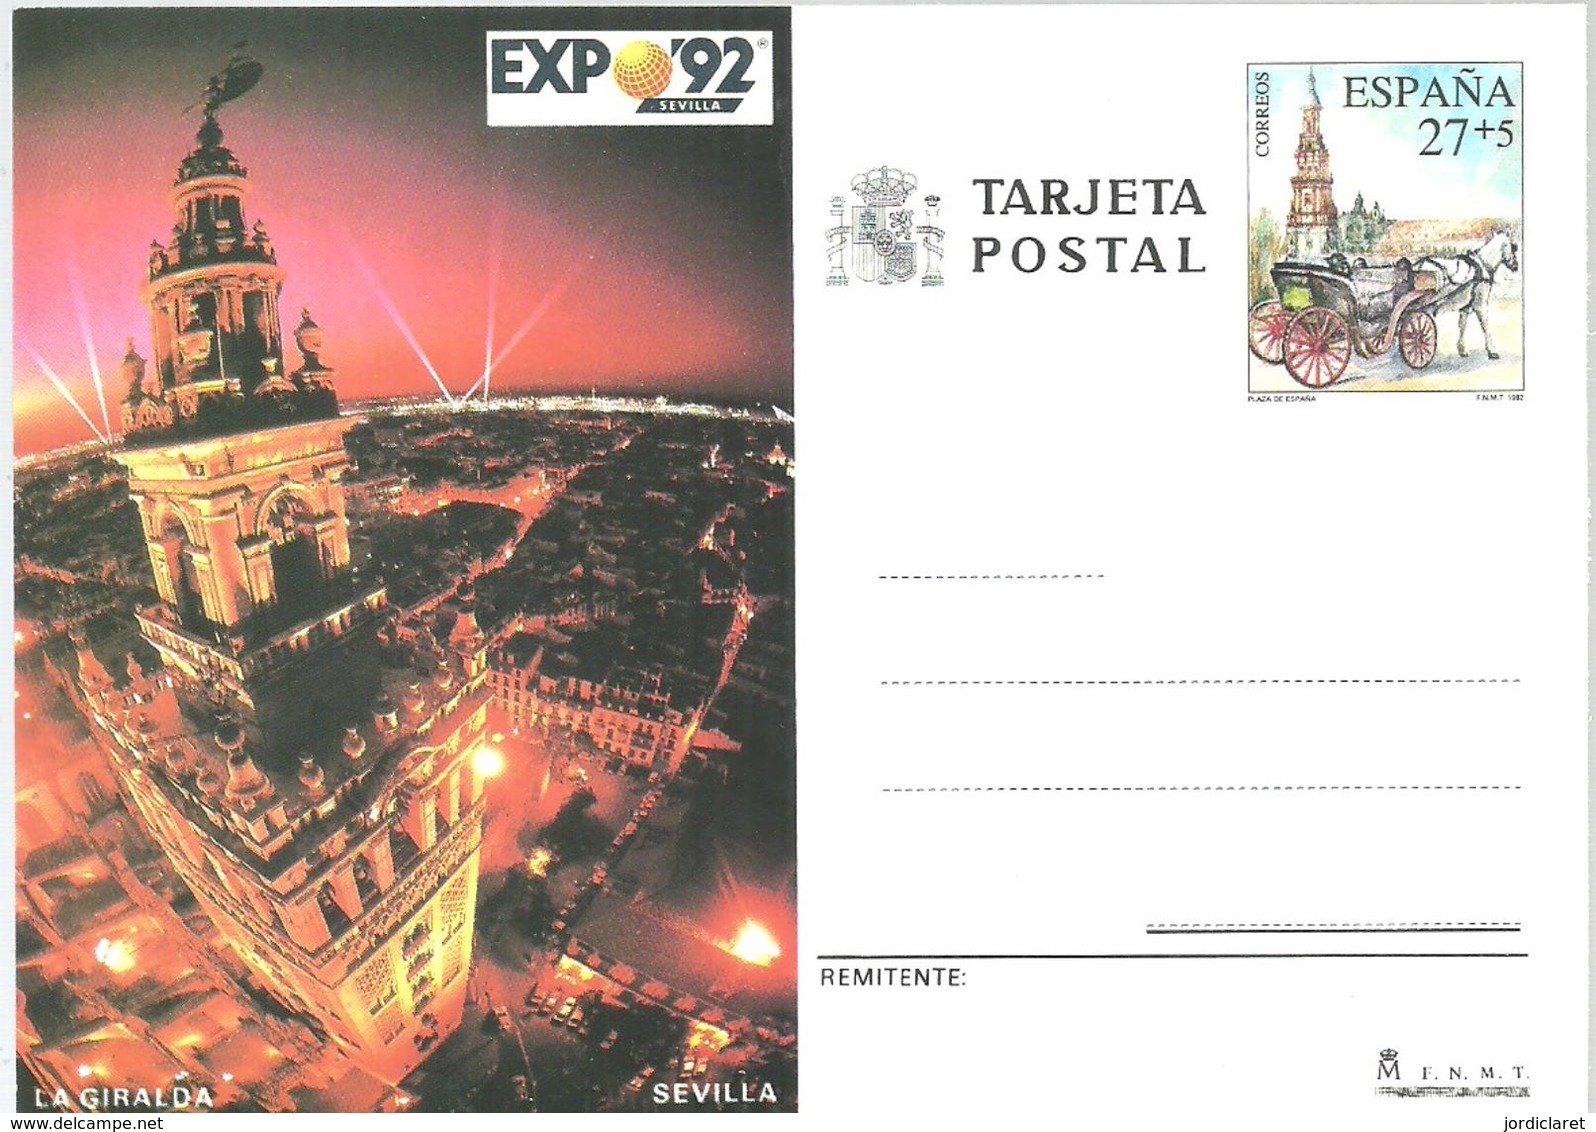 STATIONERY ESPAÑA 1982 - 1992 – Sevilla (España)